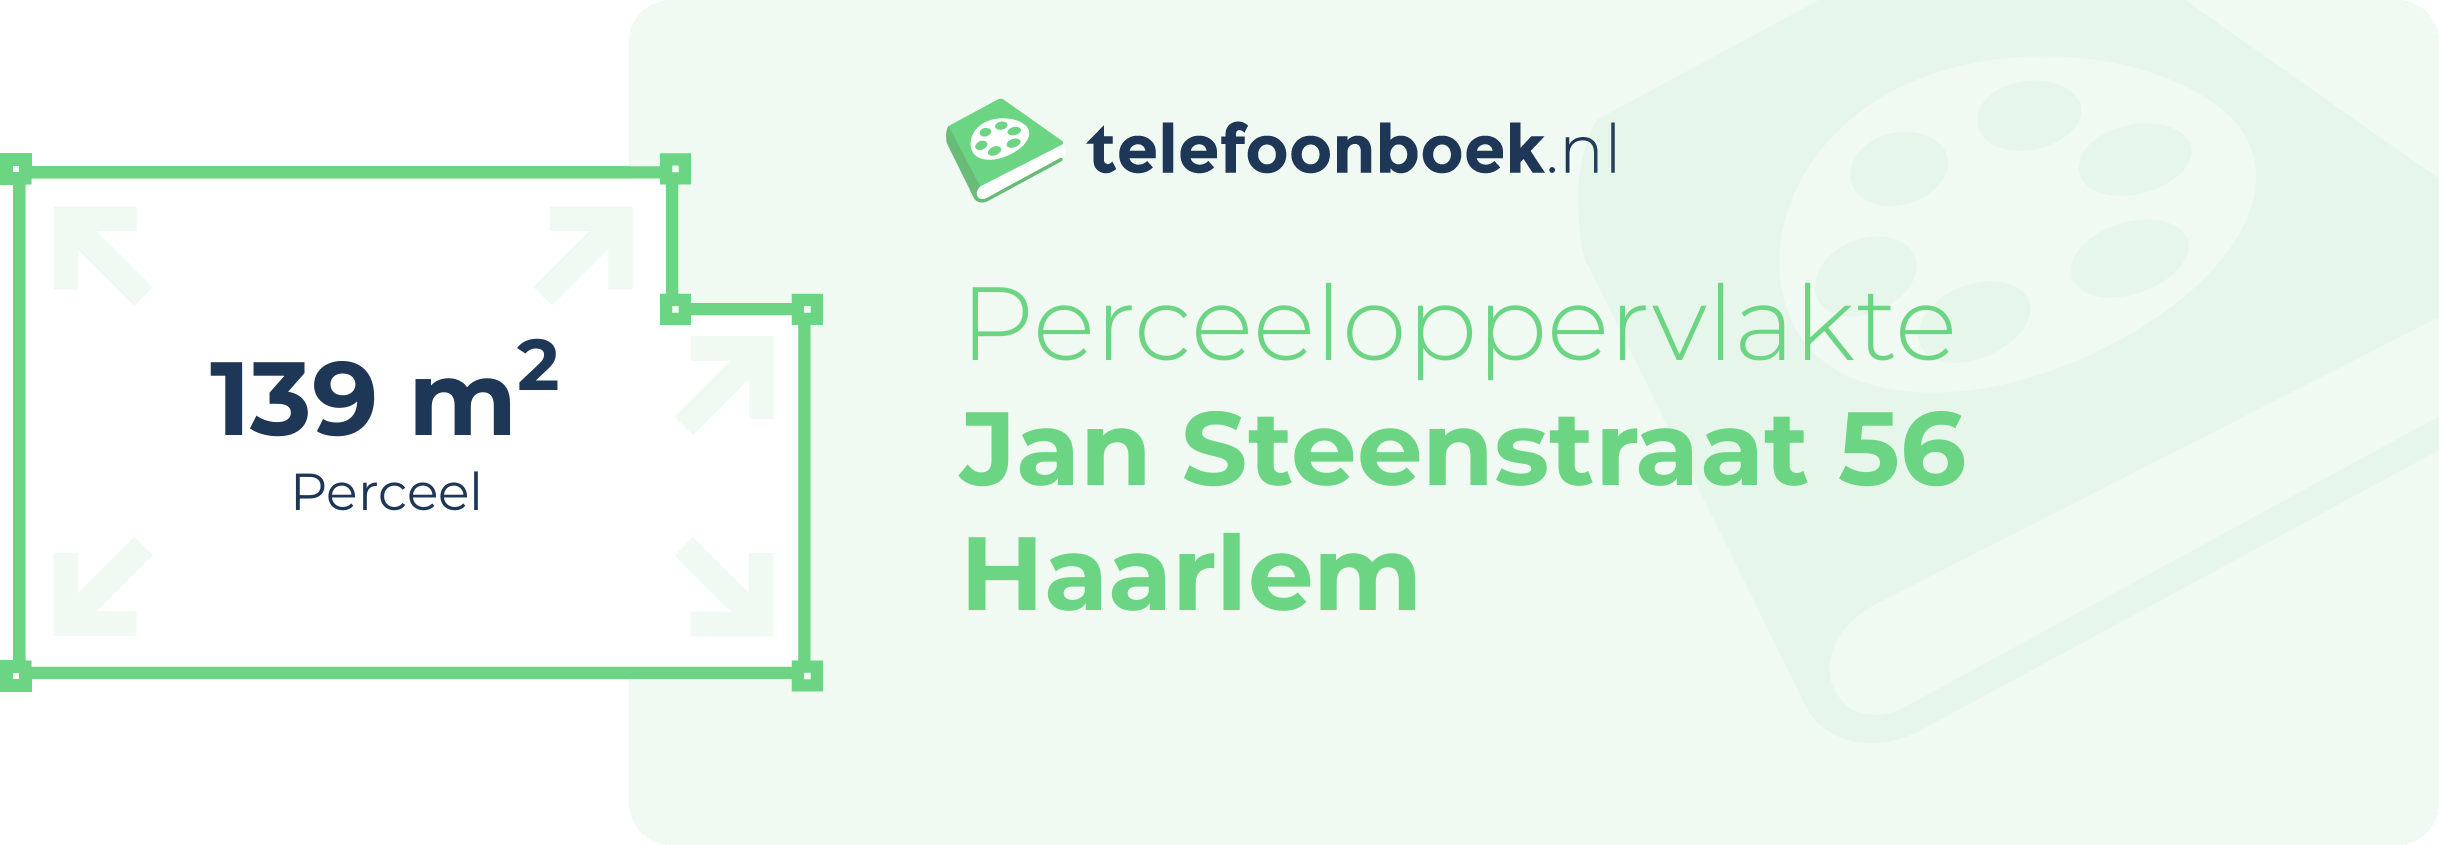 Perceeloppervlakte Jan Steenstraat 56 Haarlem